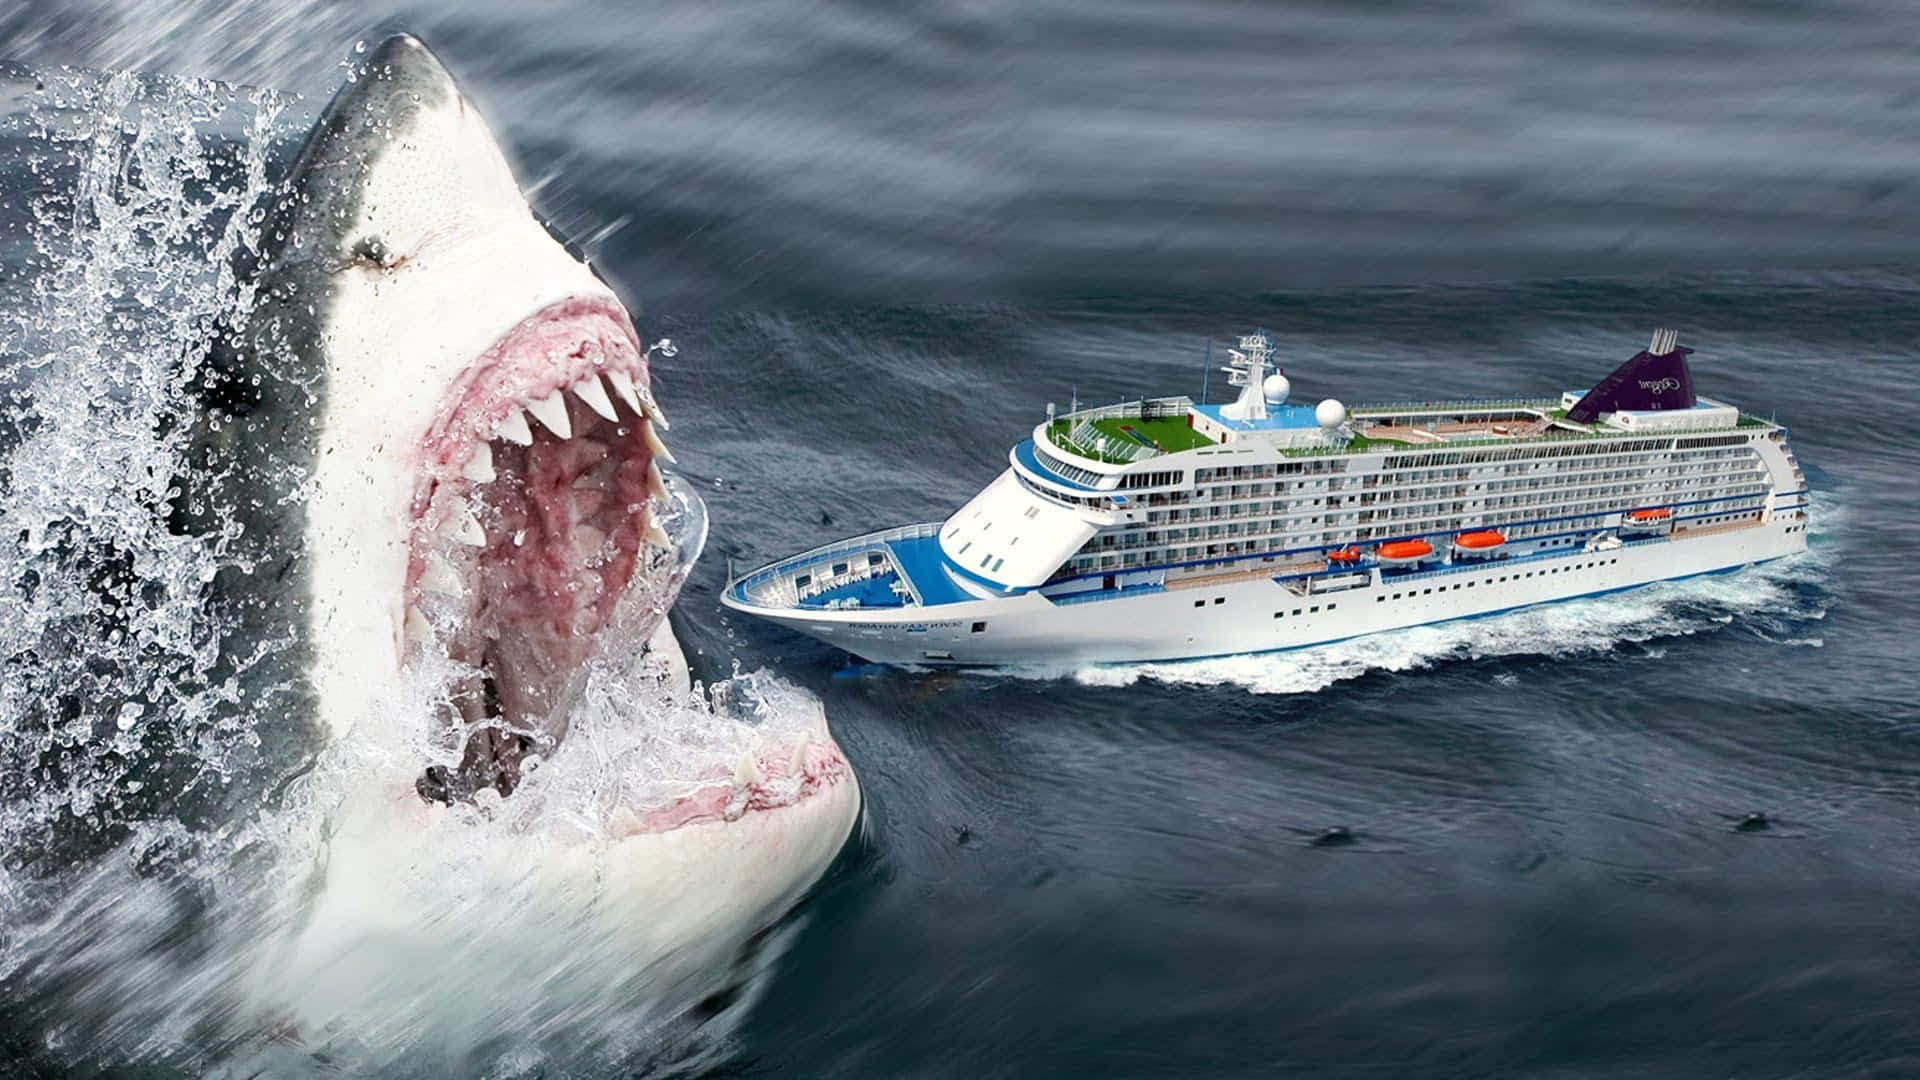 Imagendel Gigantesco Megalodón Atacando Un Barco De Crucero